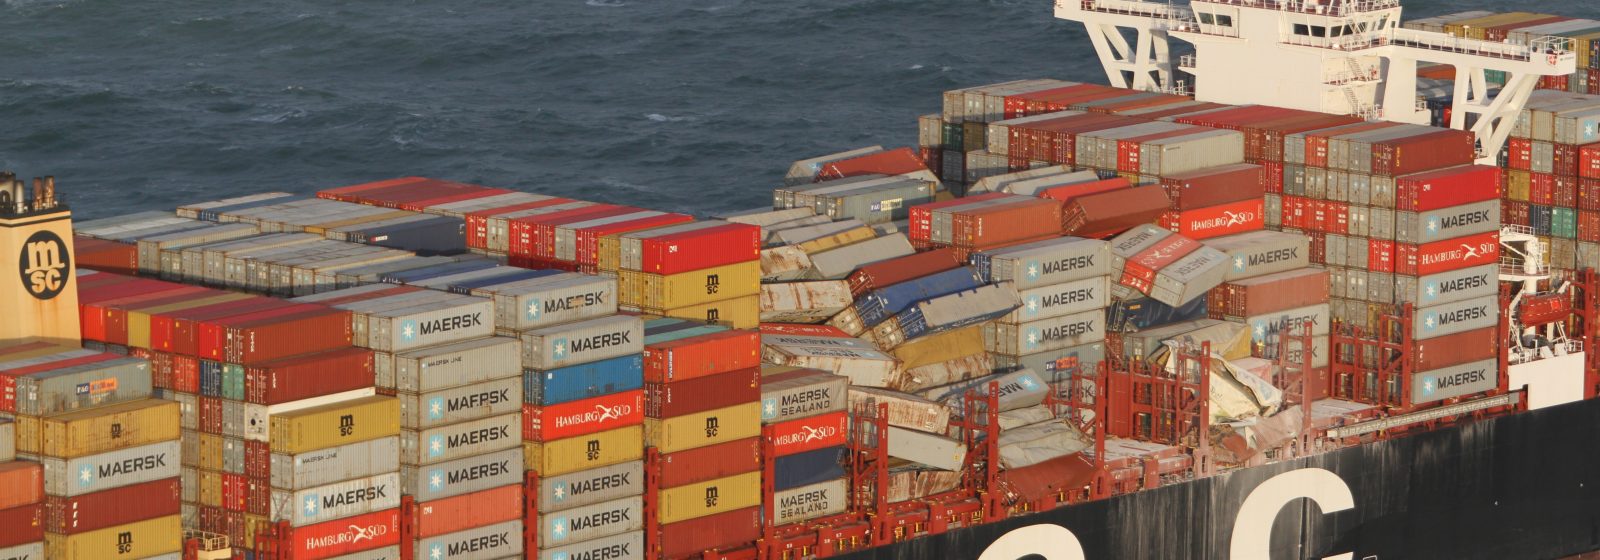 De 'MSC Zoë' na verlies van containers